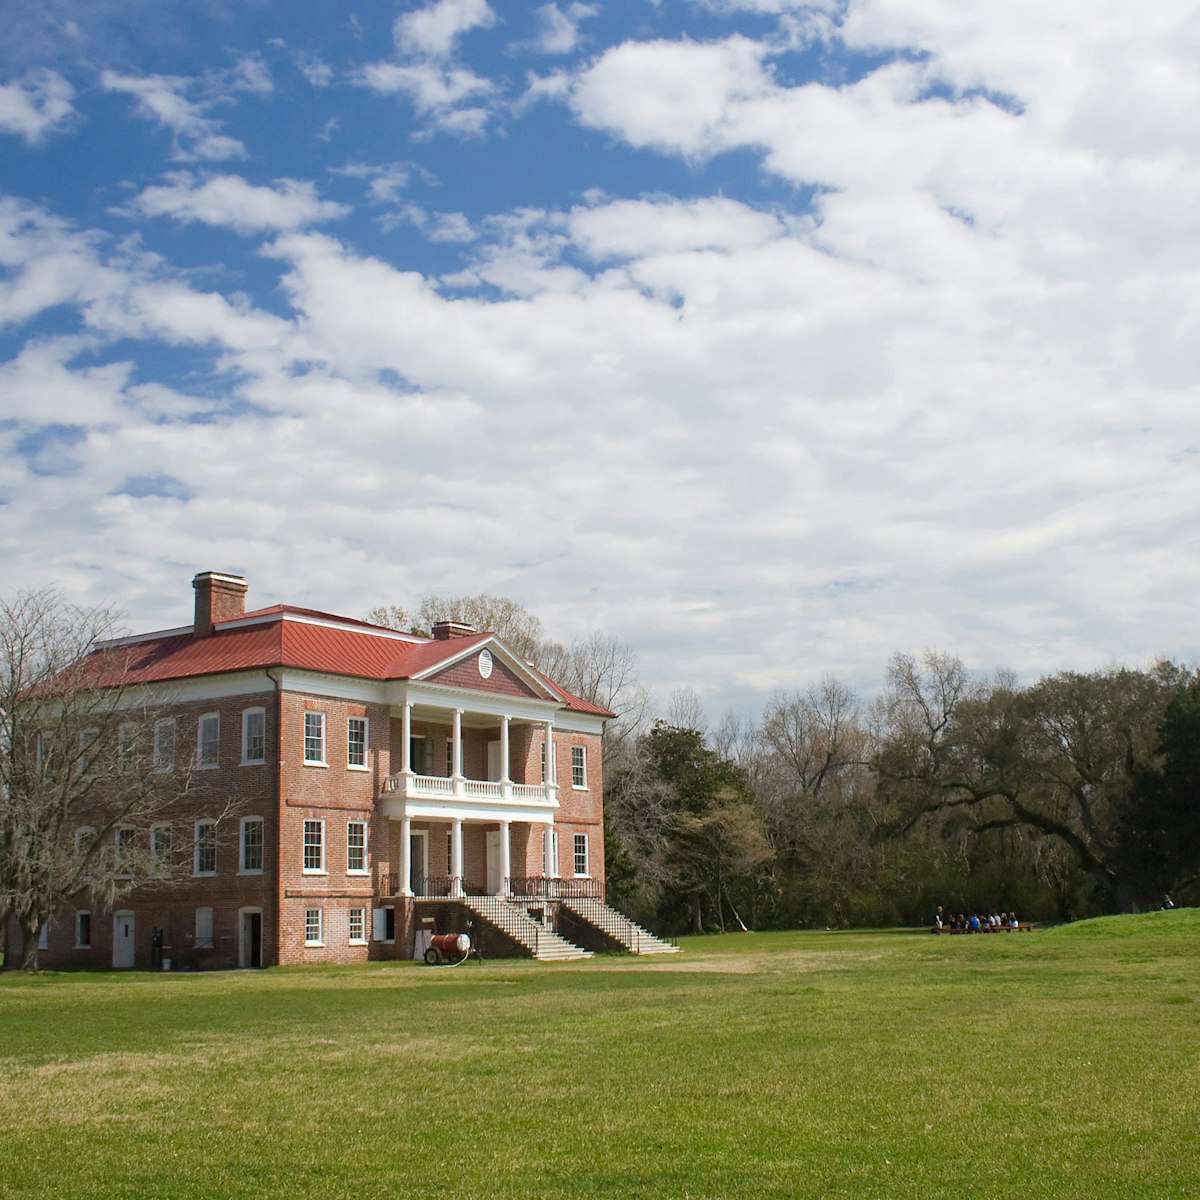 Drayton Hall in South Carolina.